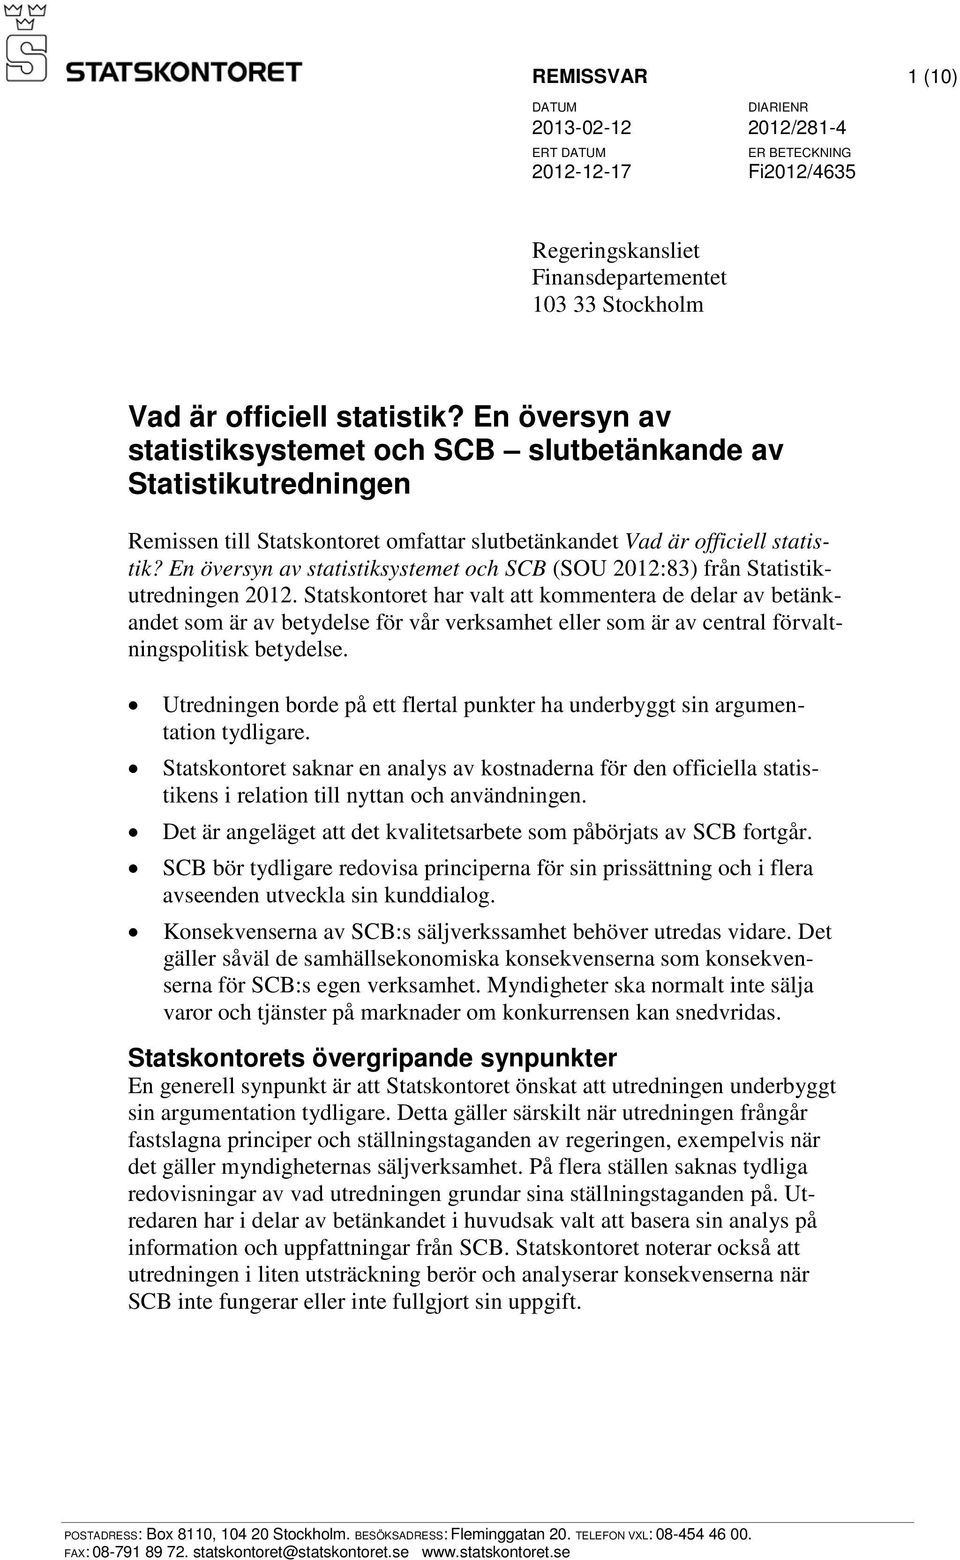 En översyn av statistiksystemet och SCB (SOU 2012:83) från Statistikutredningen 2012.